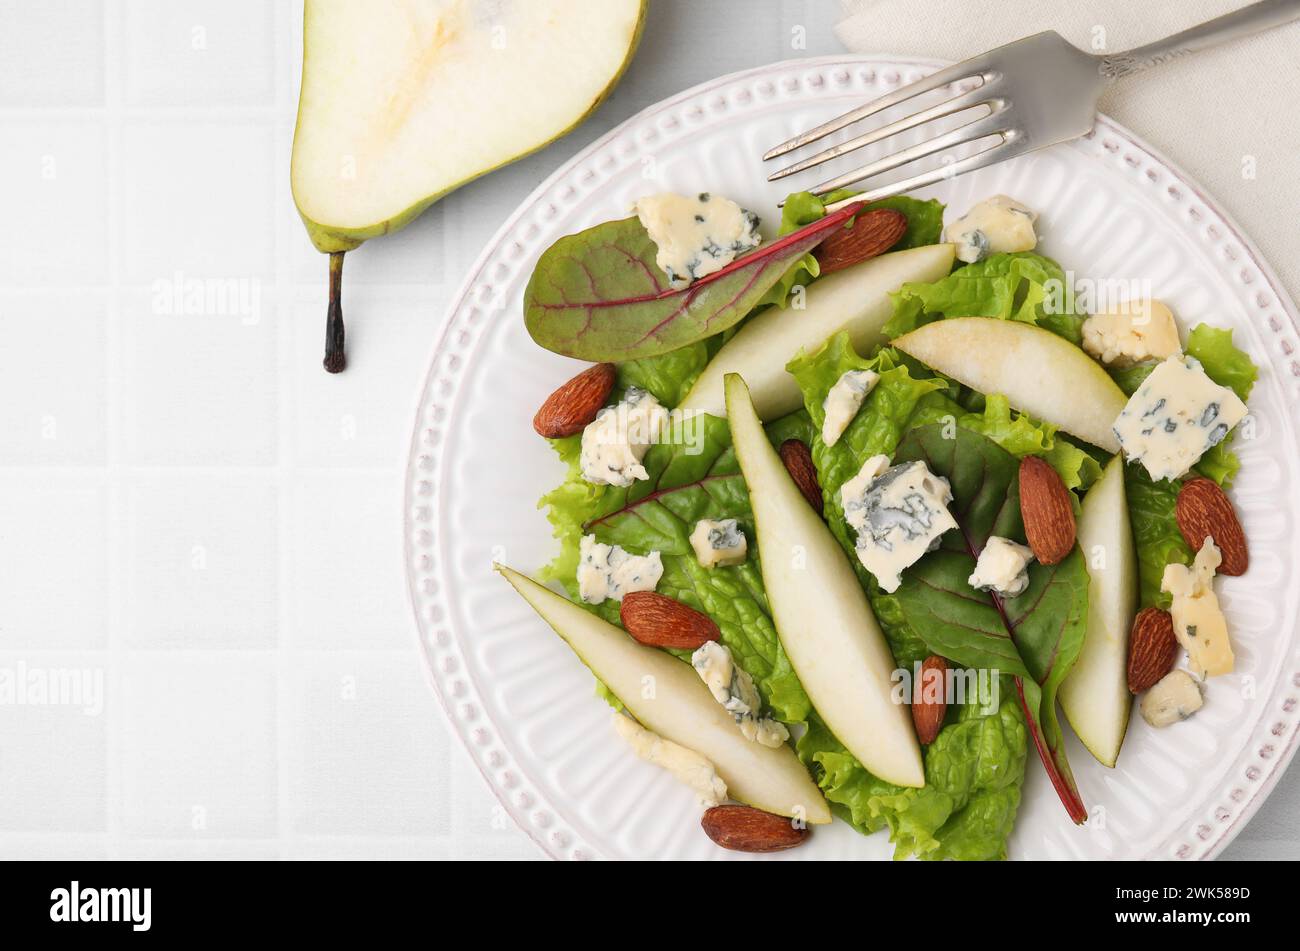 Délicieuse salade de poires et fruits sur table carrelée blanche, vue de dessus. Espace pour le texte Banque D'Images